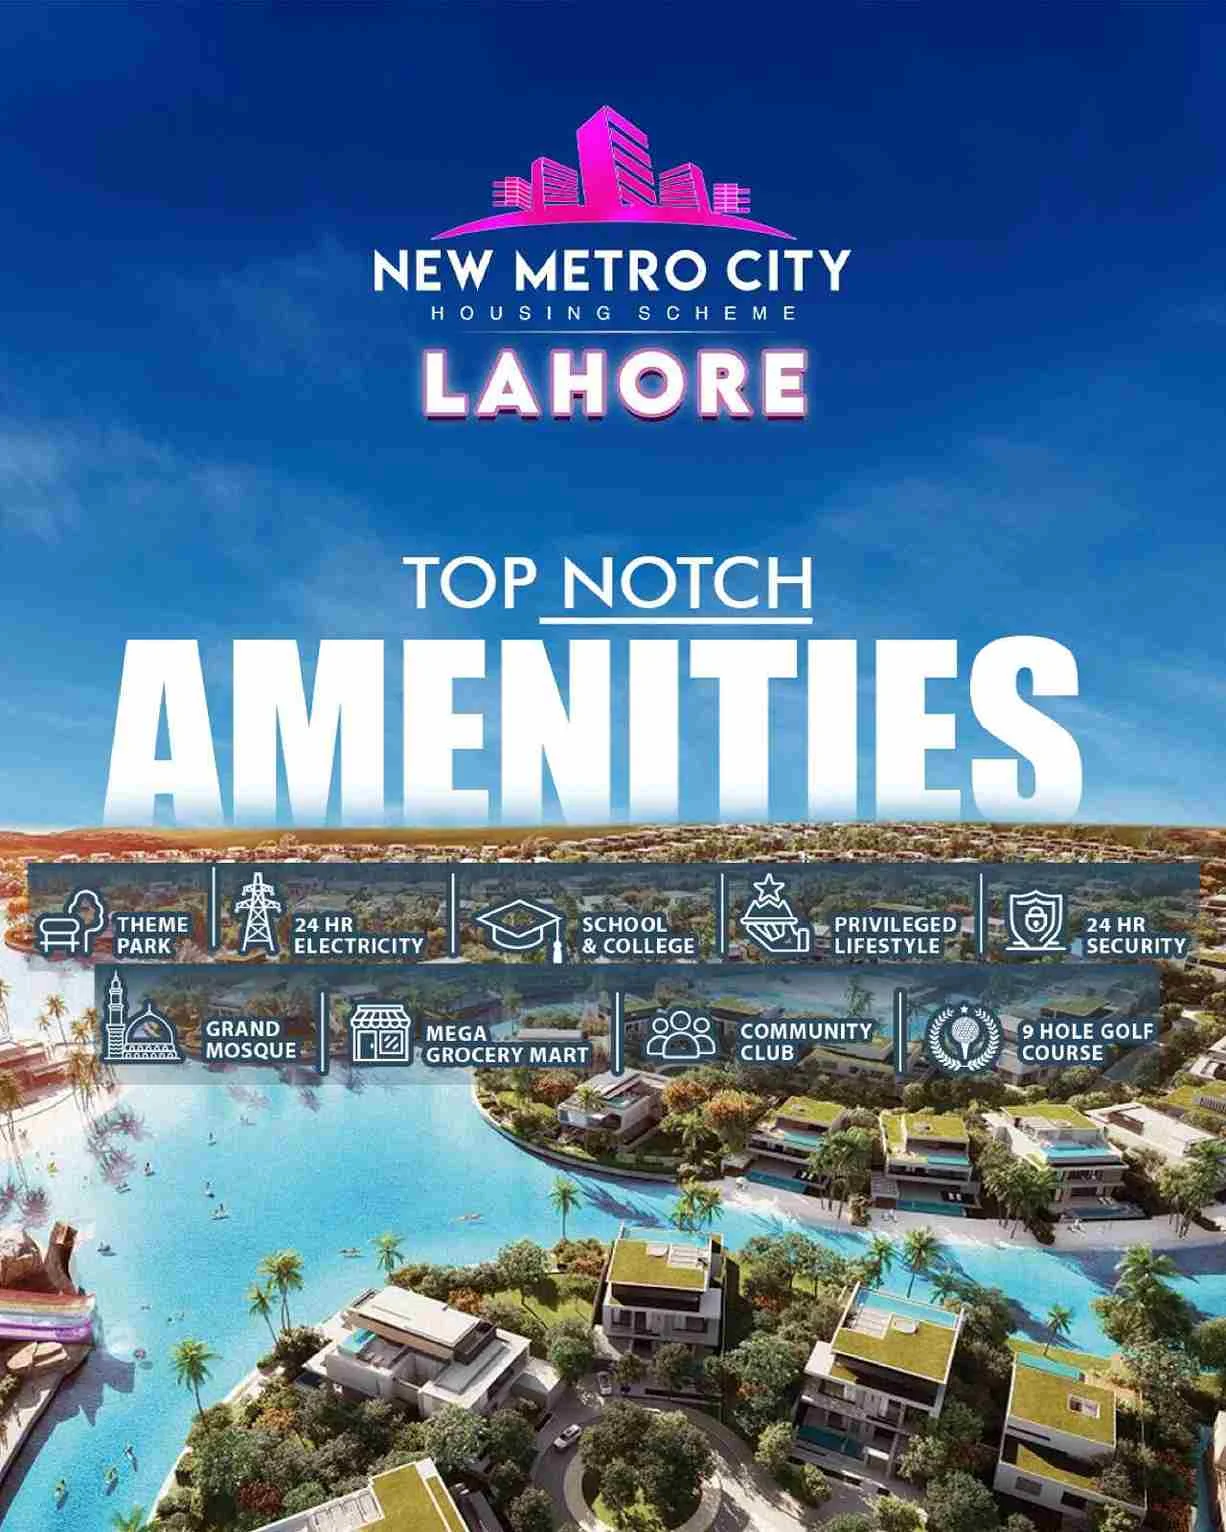 New Metro City Lahore